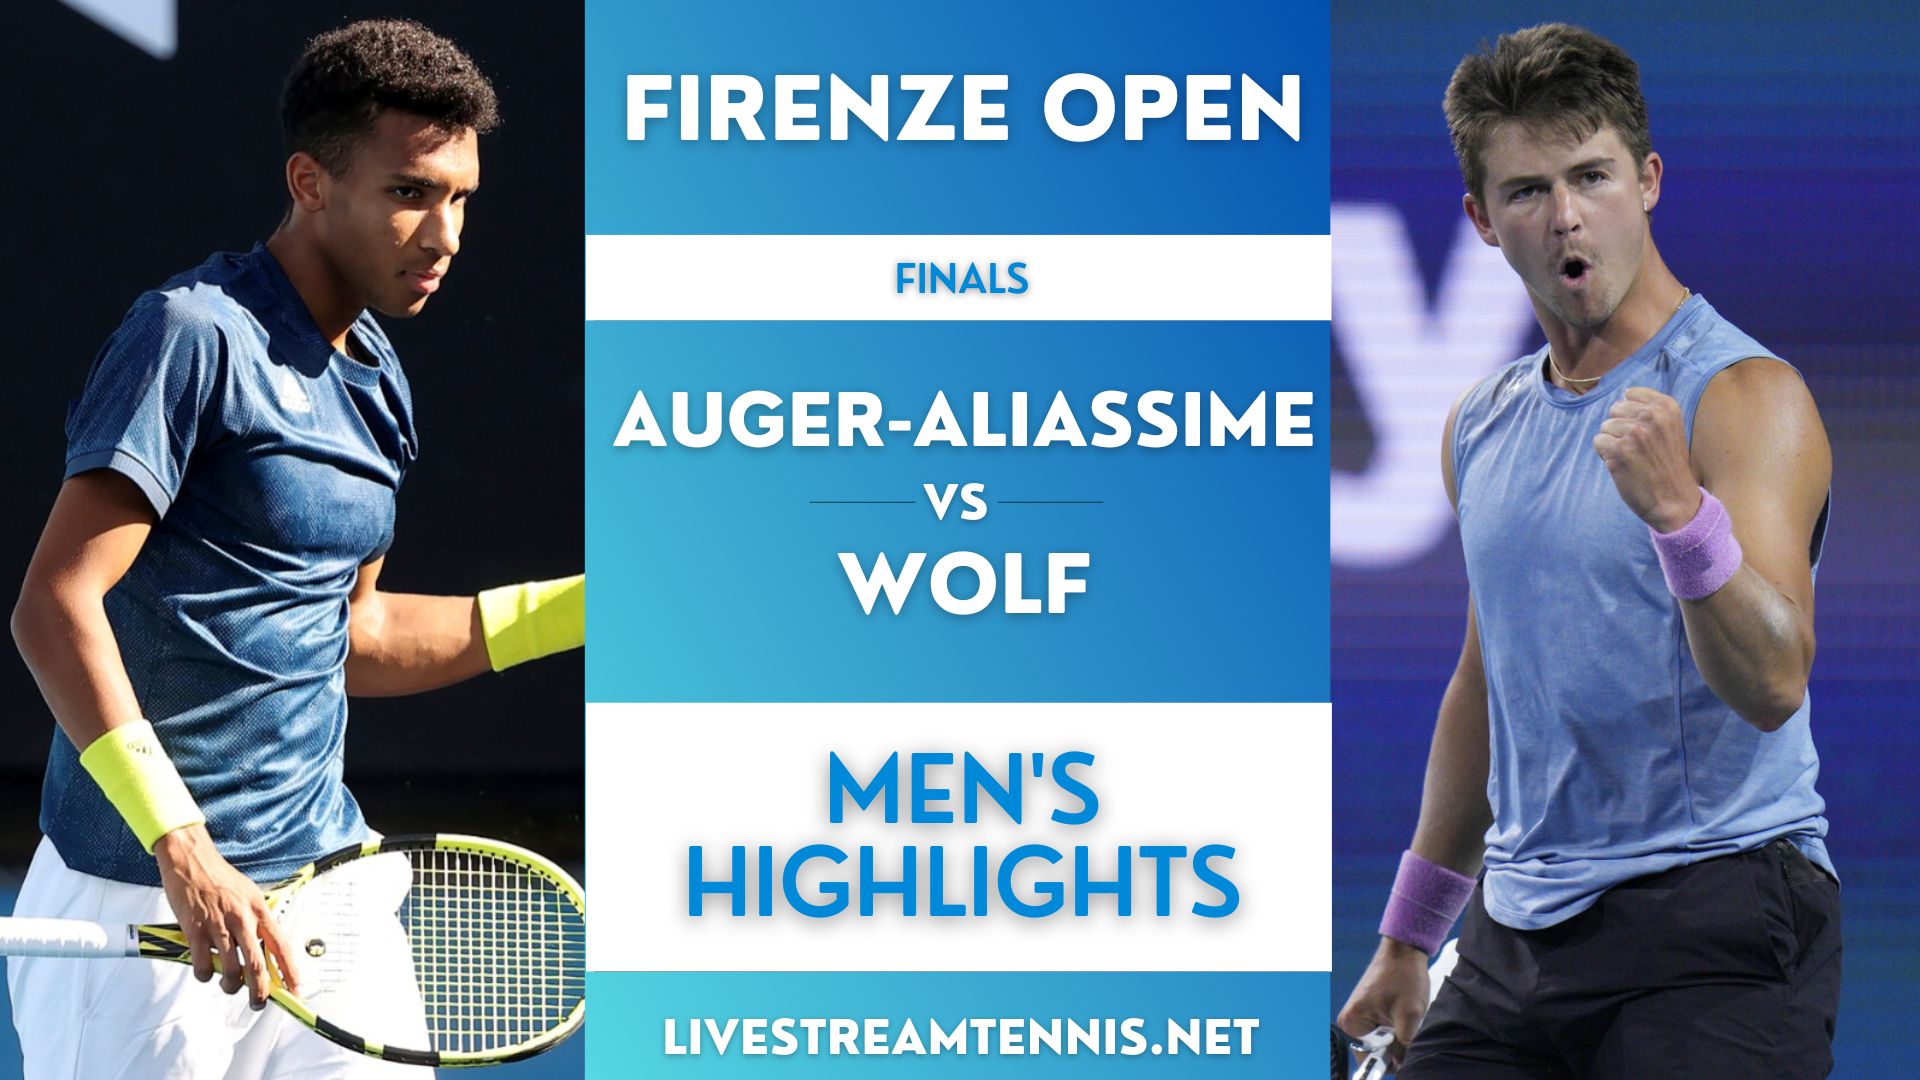 Firenze Open ATP Final Highlights 2022